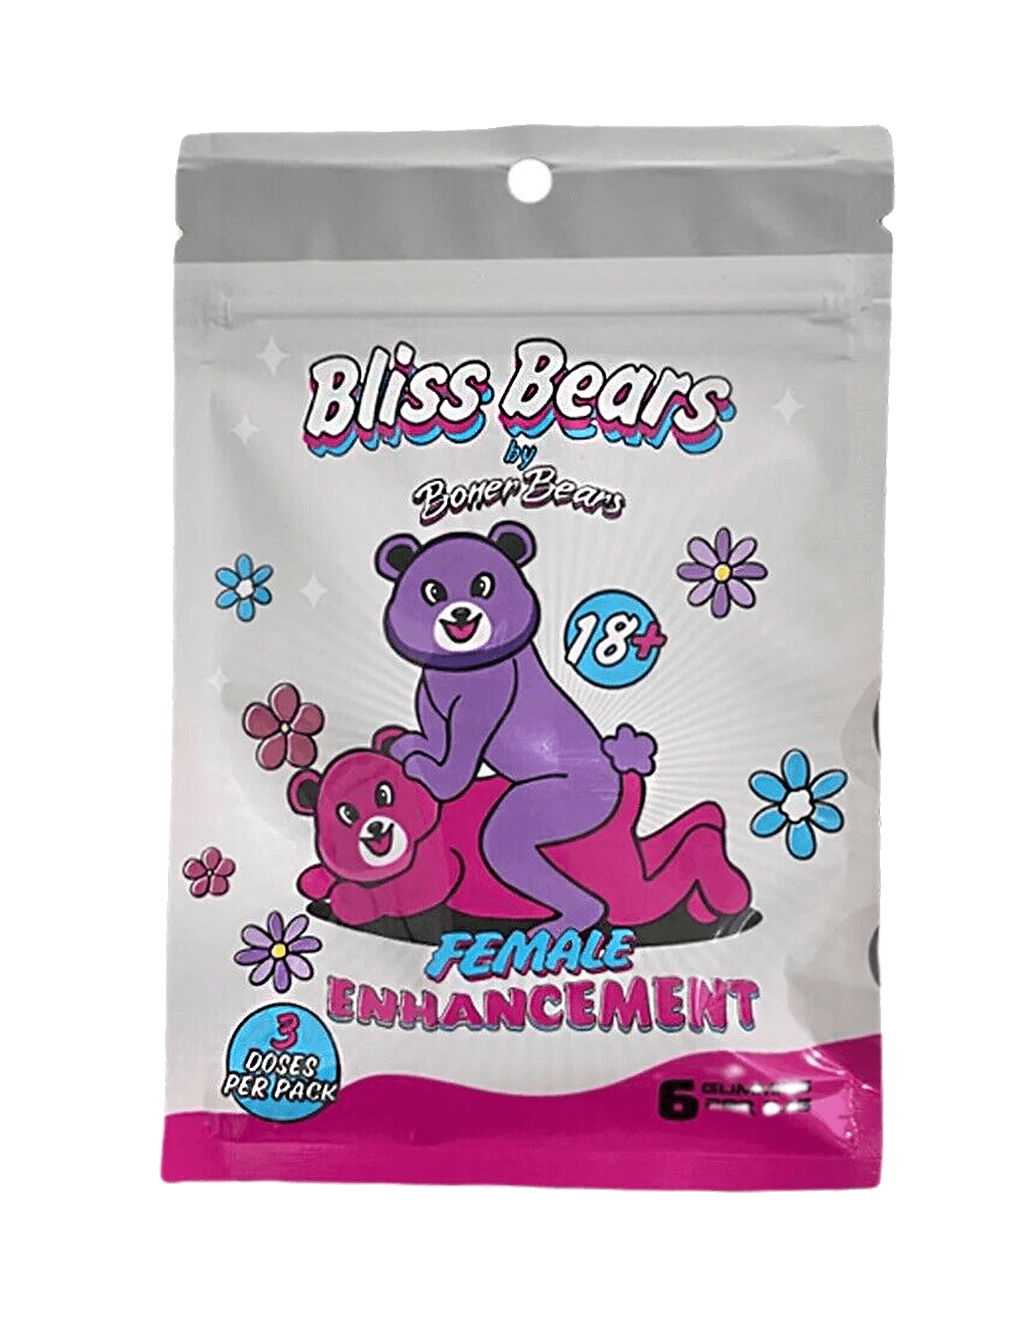 Bliss Bears Female Enhancement Gummies - 6ct - Main